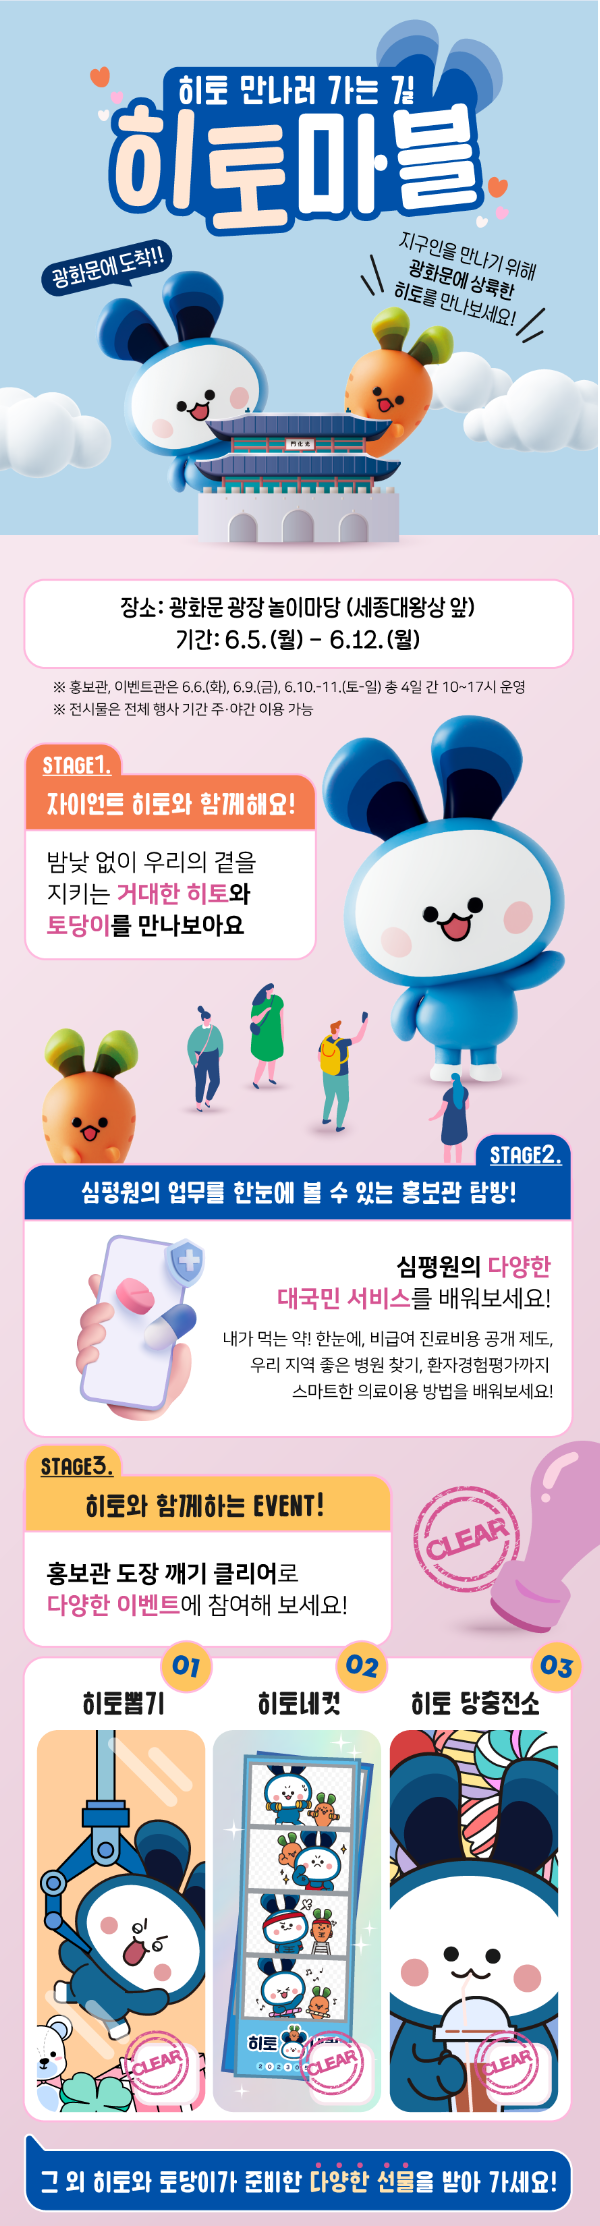 심평원, TV 광고 런칭 기념 오프라인 프로모션 개최